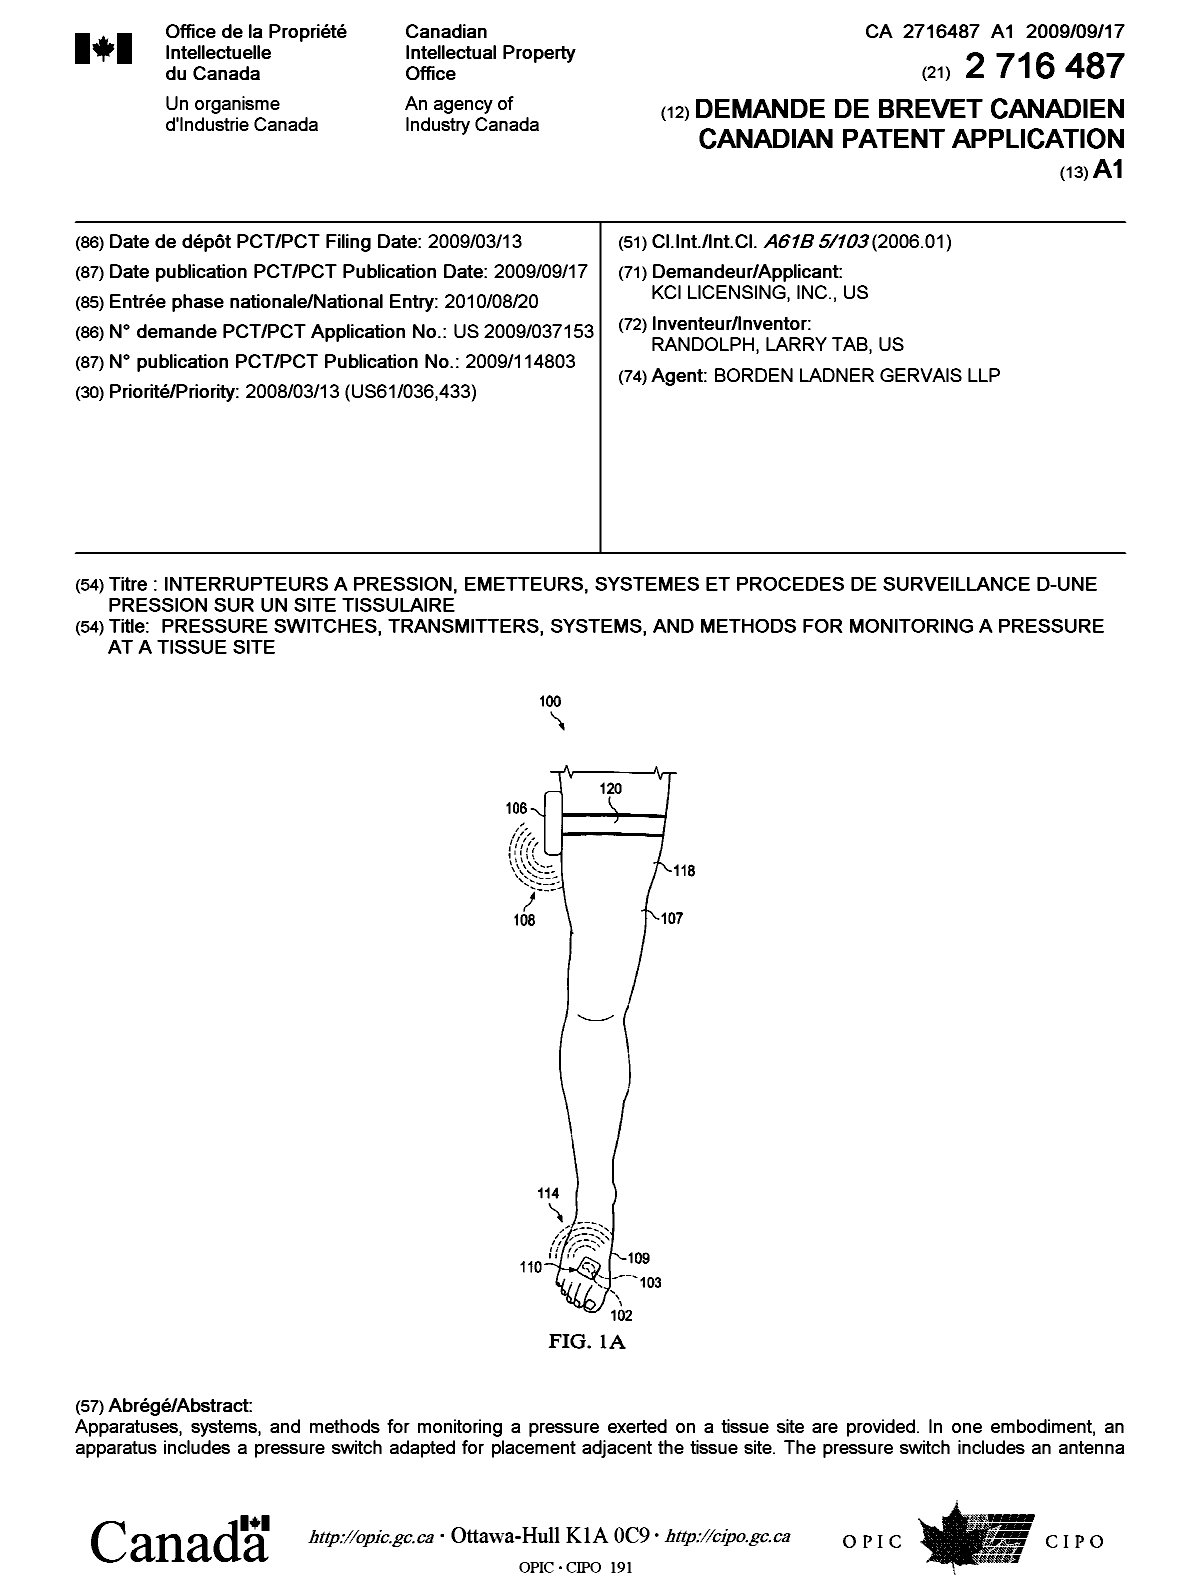 Document de brevet canadien 2716487. Page couverture 20101126. Image 1 de 2